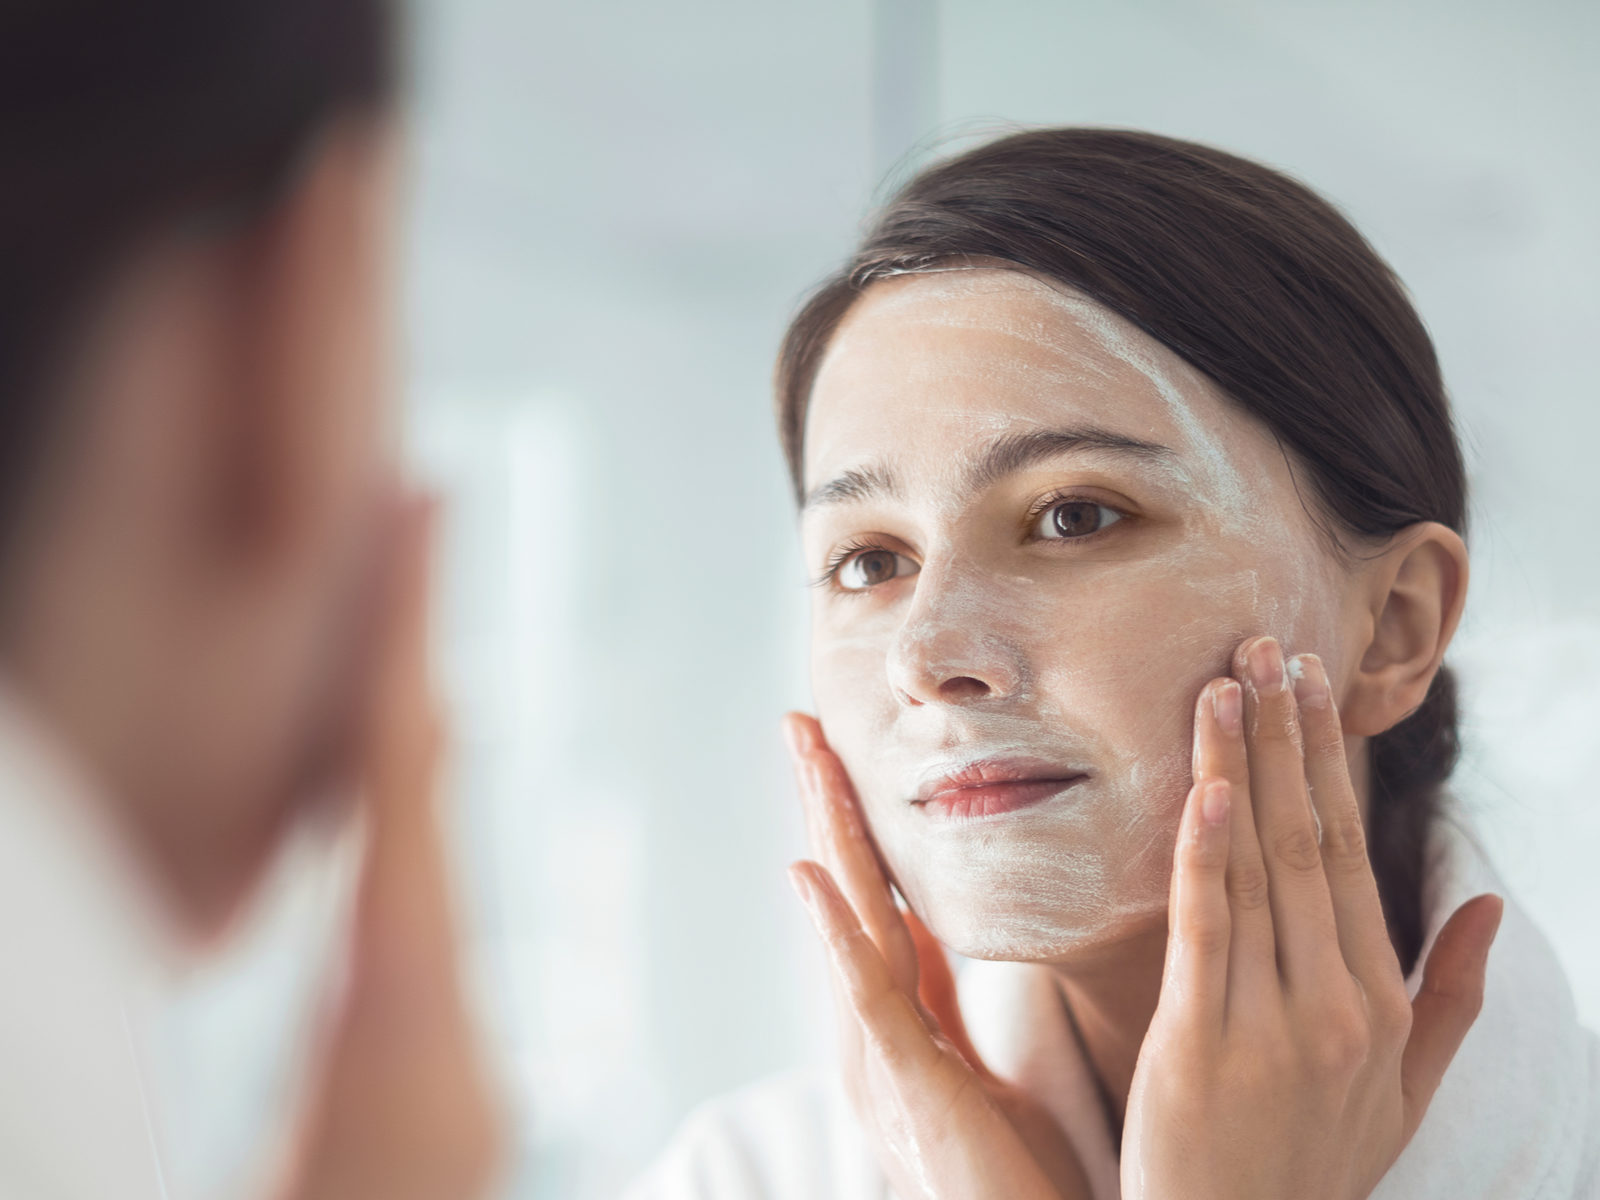 चेहरे पर साबुन का इस्तेमाल त्वचा को खुश्क बनाता है.  Image: shutterstock